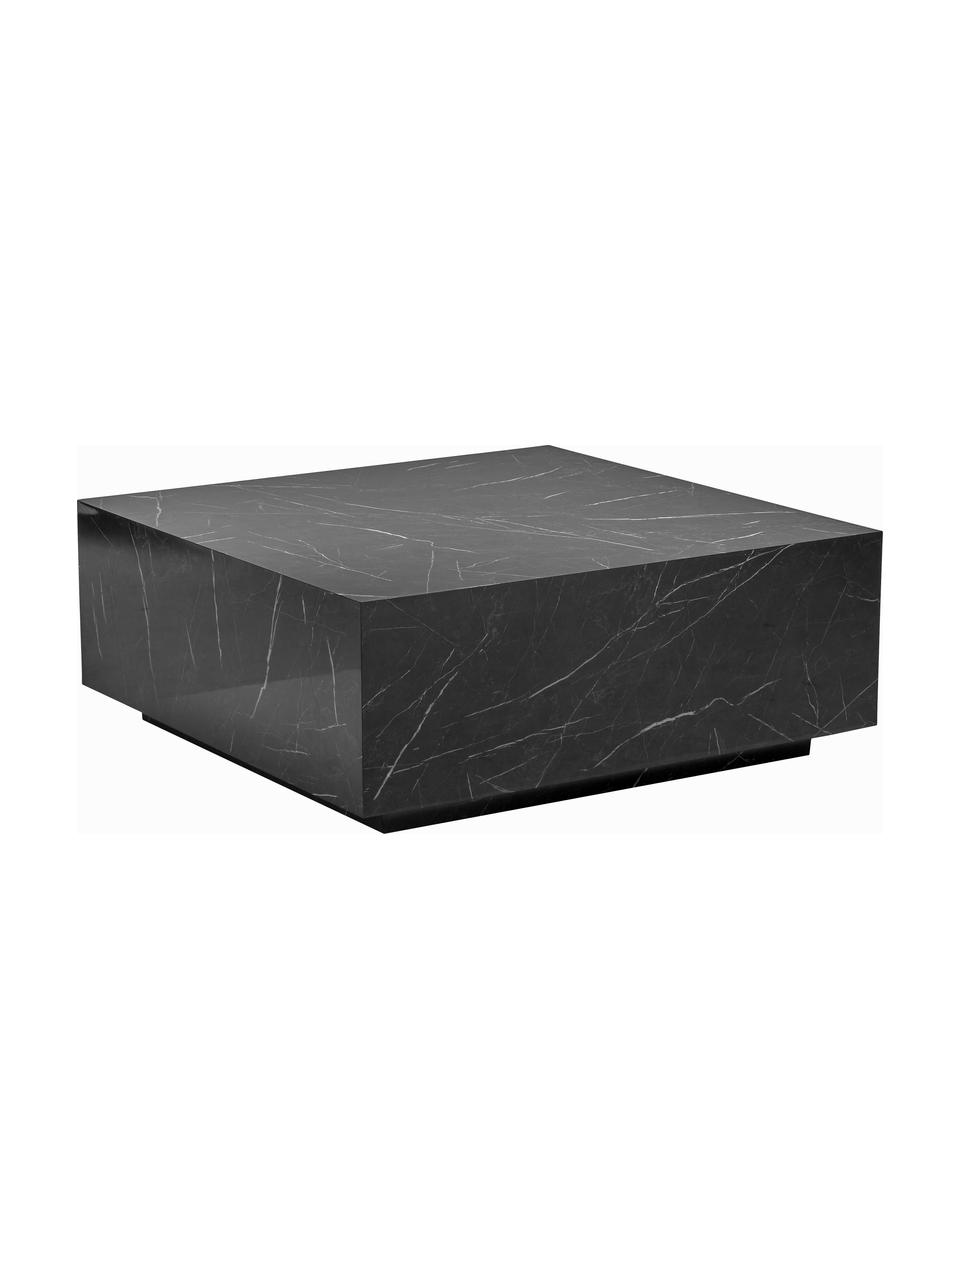 Konferenční stolek v mramorovém vzhledu Lesley, MDF deska (dřevovláknitá deska střední hustoty) pokrytá melaminovou fólií, Mramorovaná lesklá černá, Š 90 cm, H 90 cm